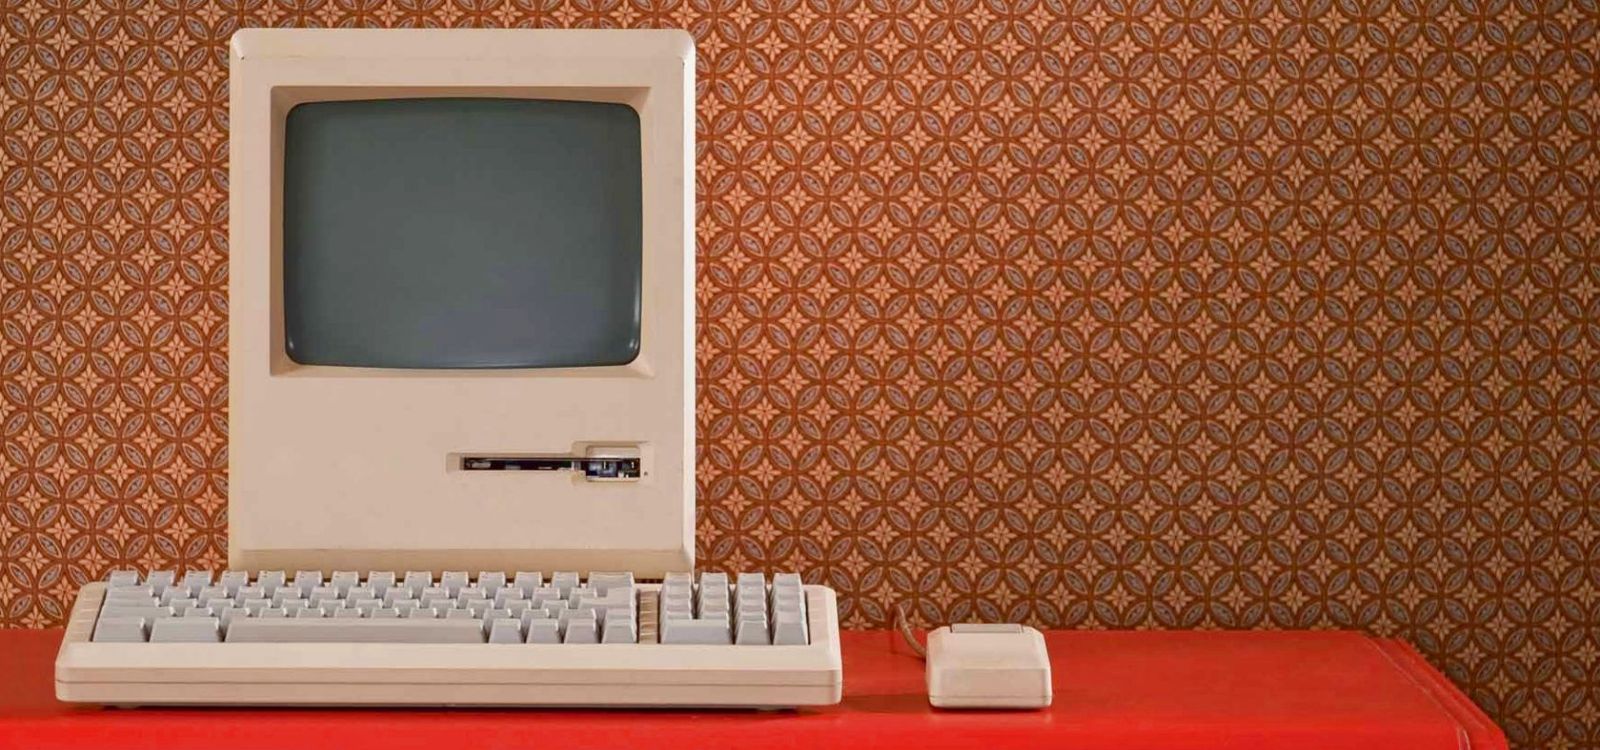 Сборка компьютера под заказ в Минске в офисе или с выездом на дом